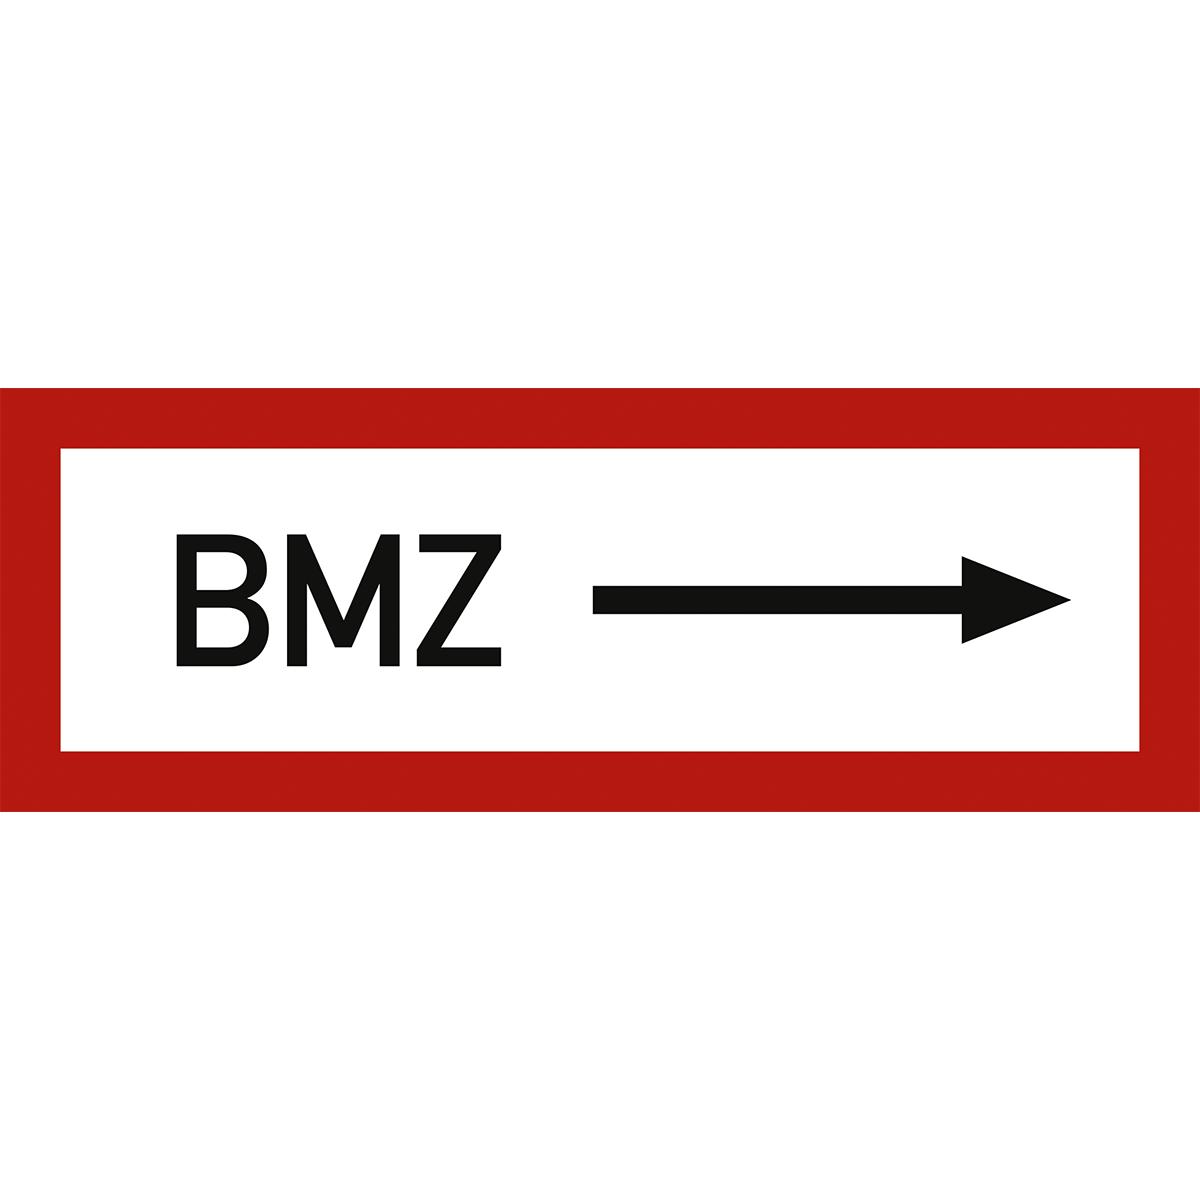 Hinweisschild mit dem Symbol+Text: BMZ rechtsweisend